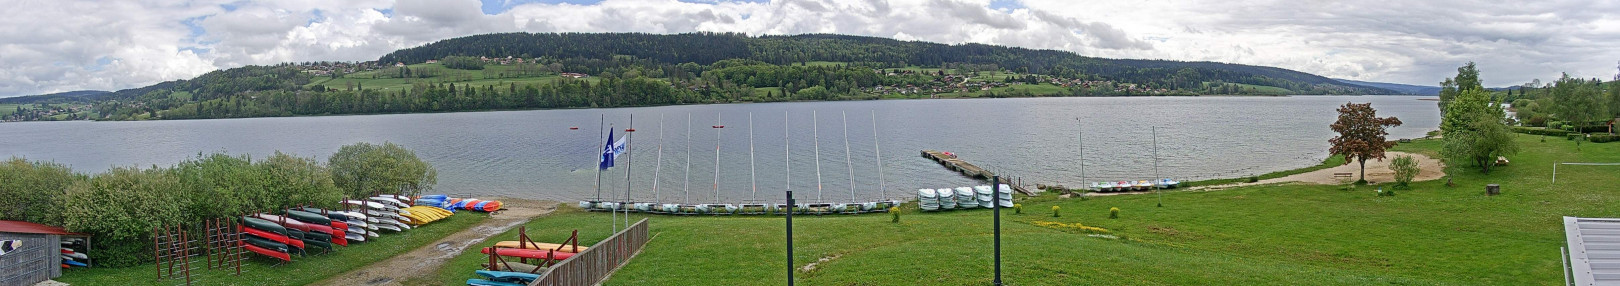 Les Grangettes - Lac Saint-Point